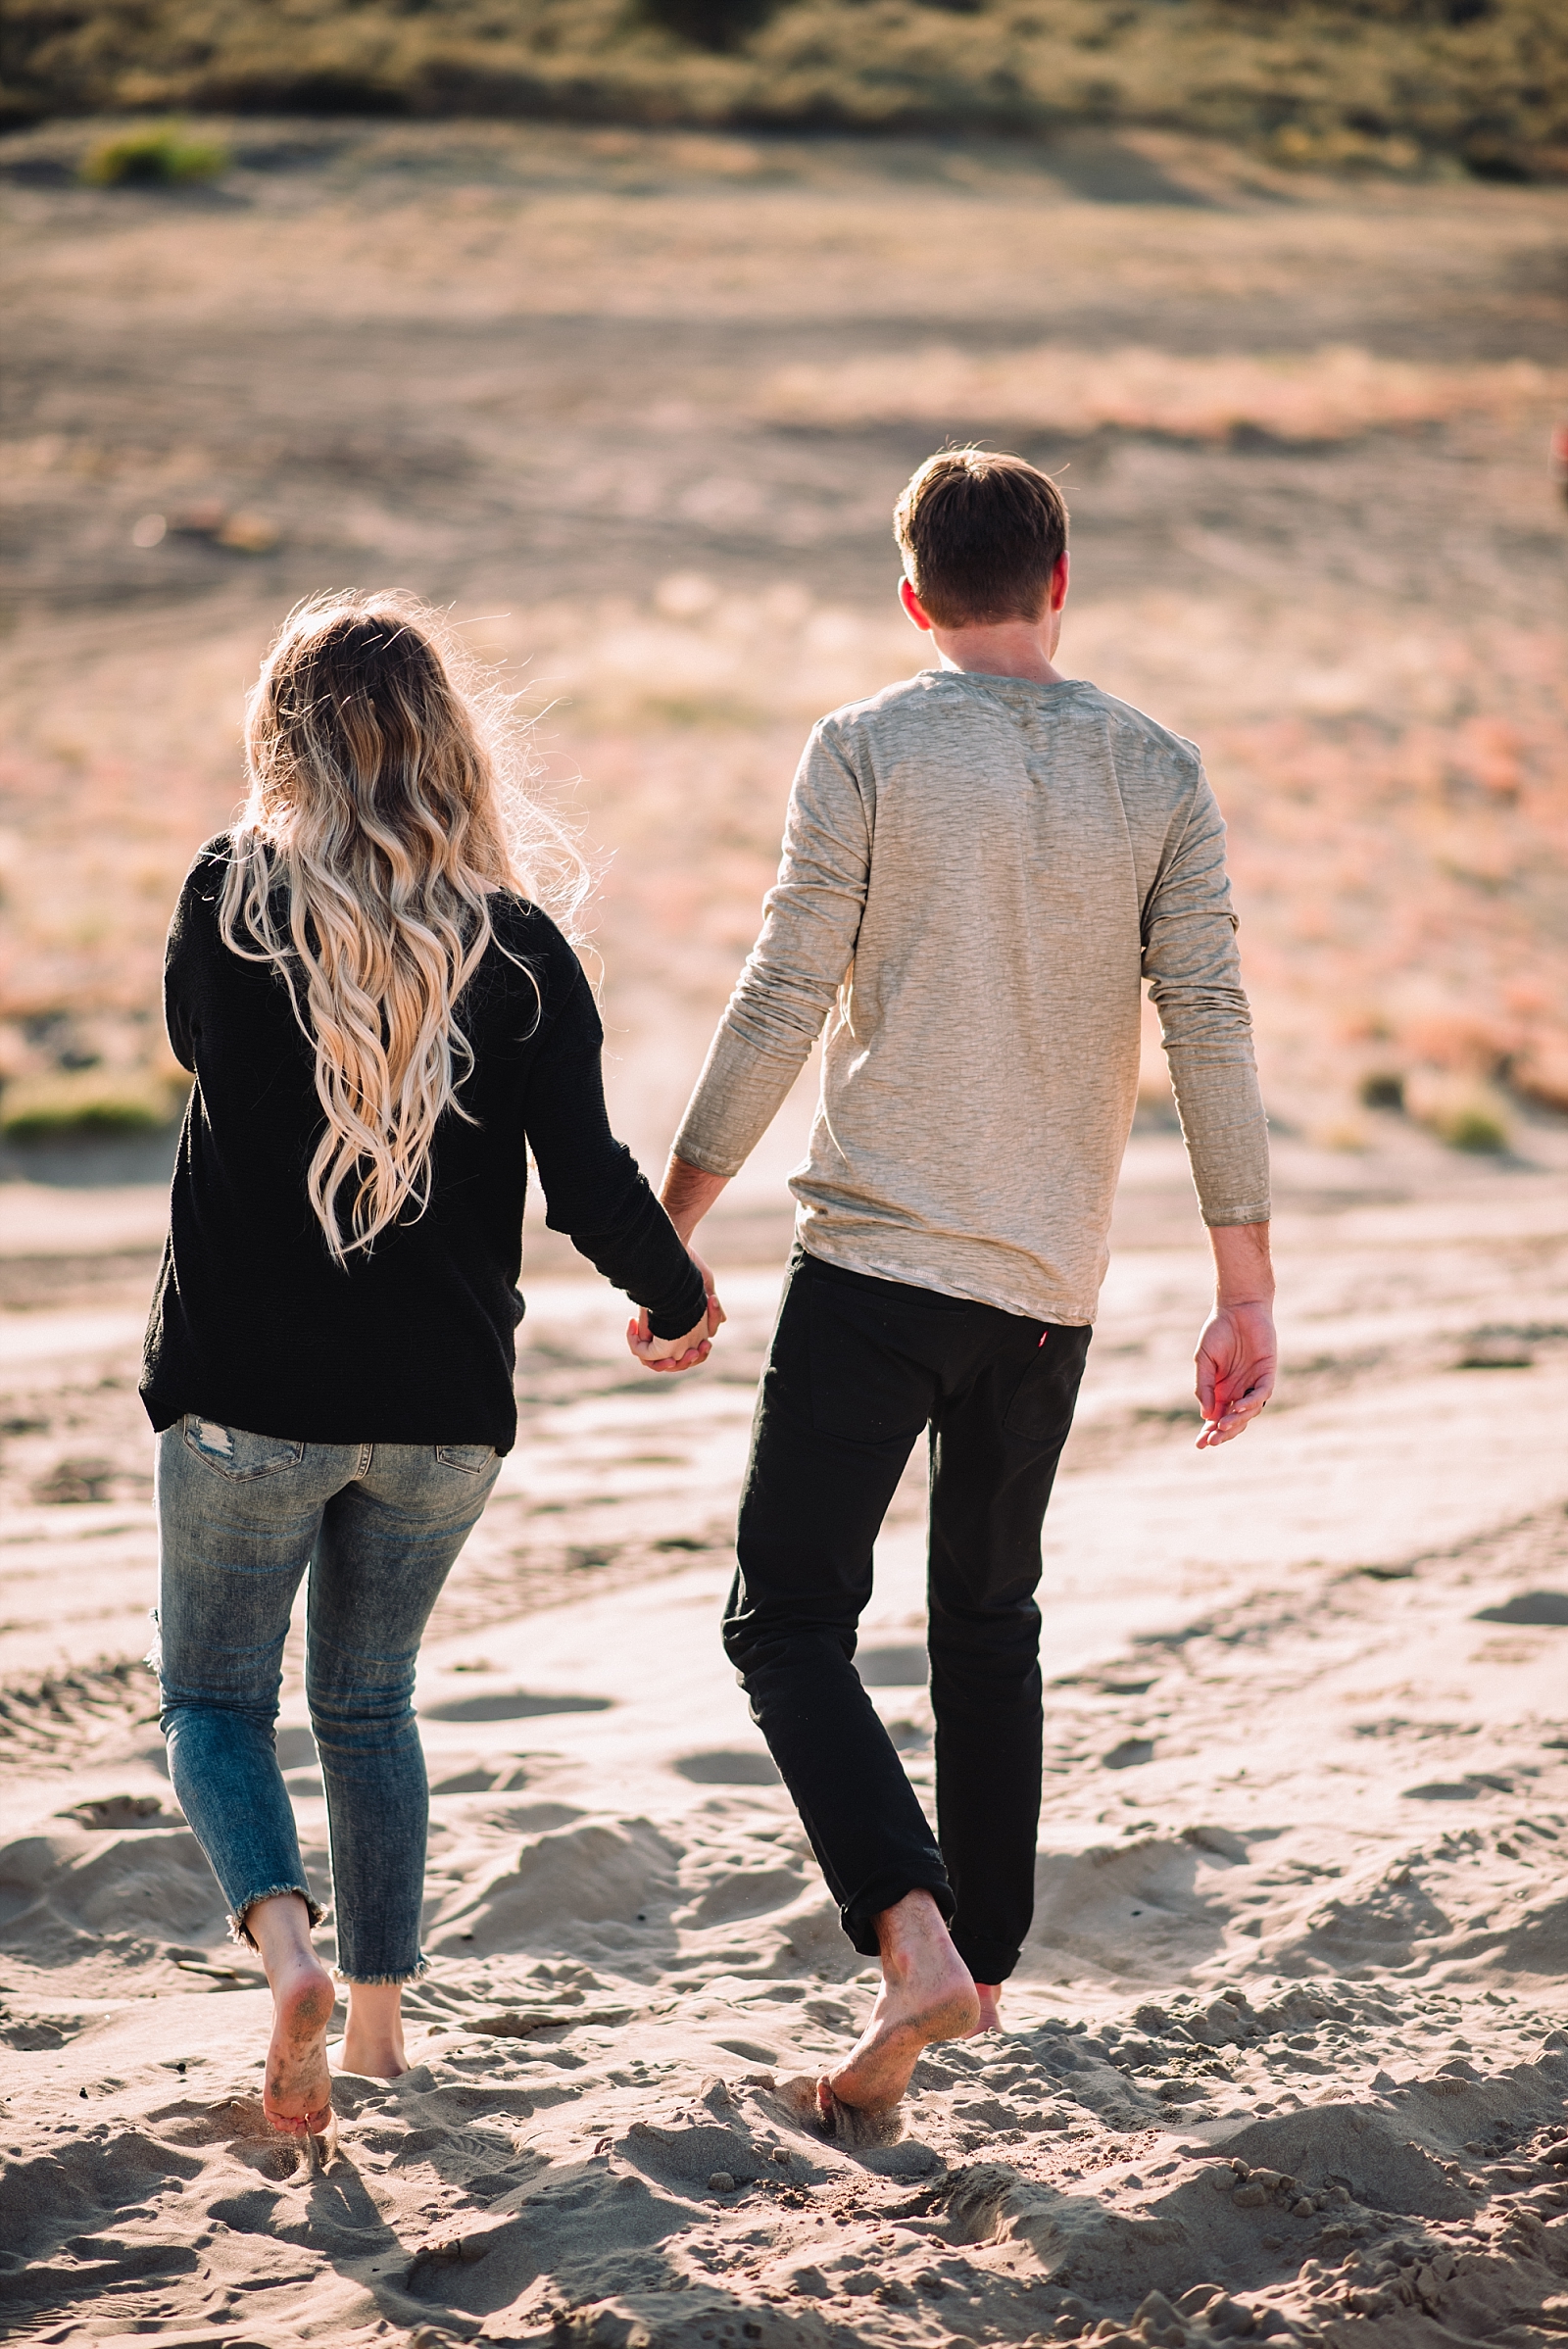 sandy desert couple walking together